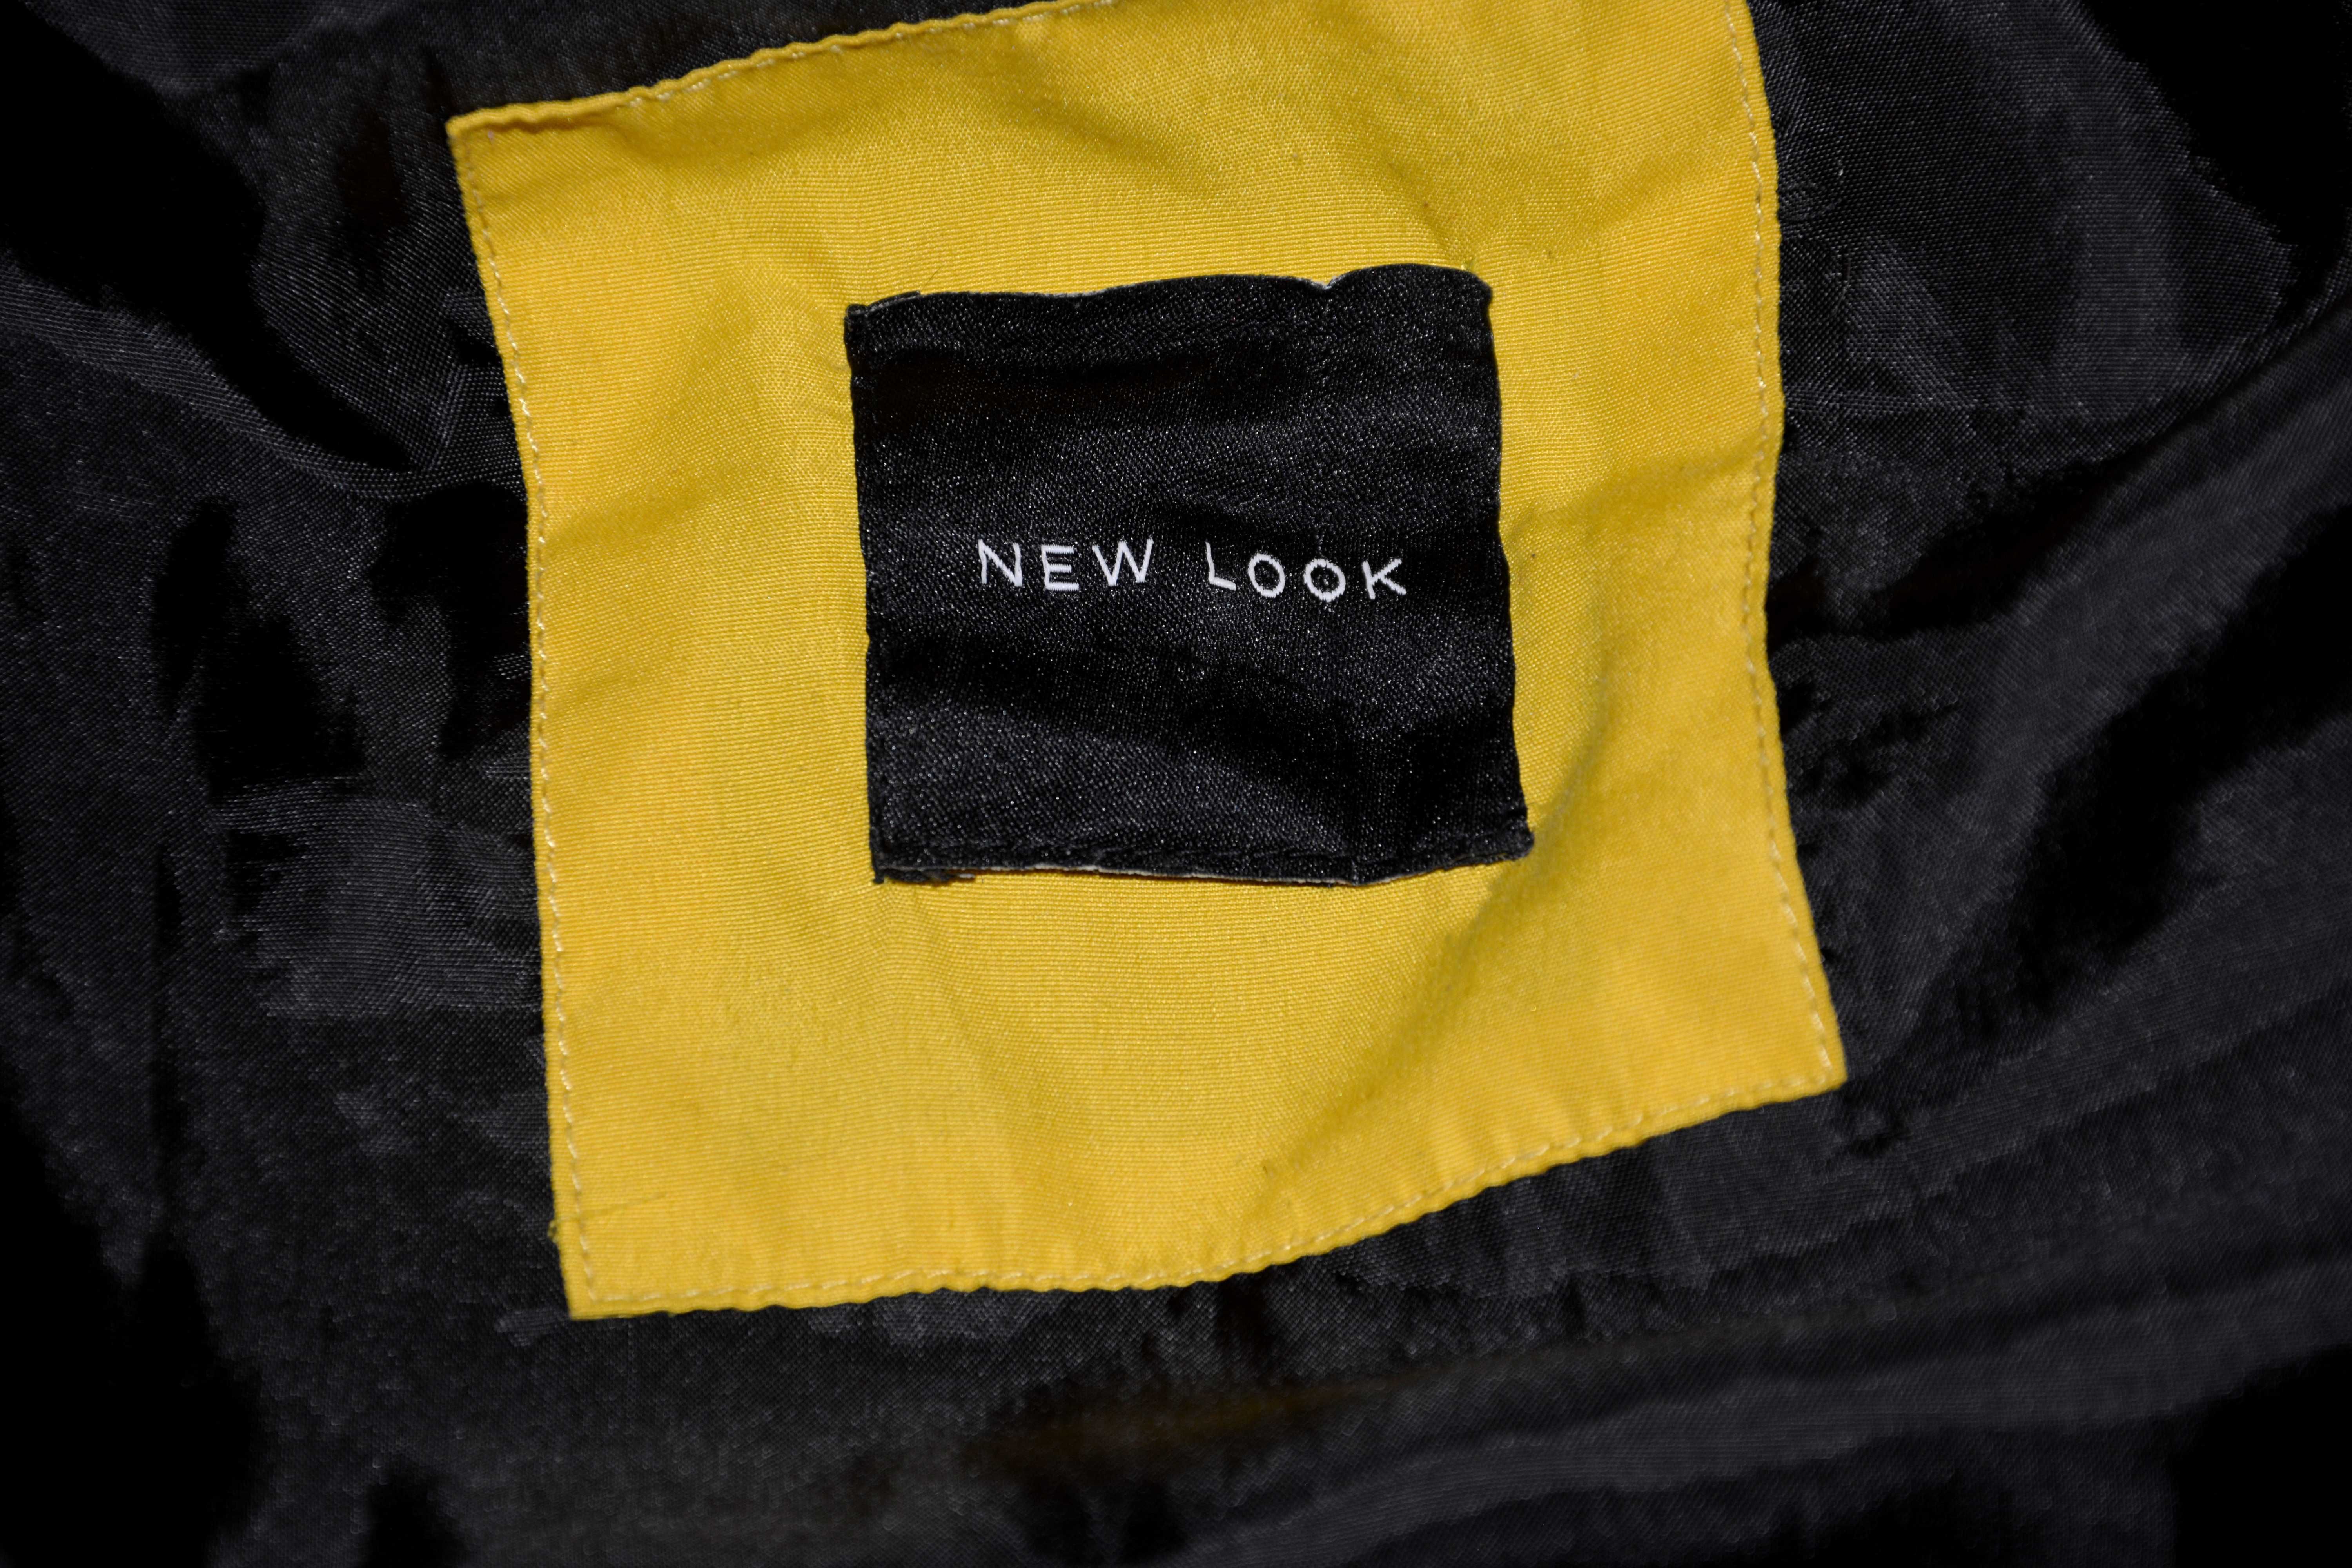 Kurtka zimowa zółta New look krótka 38 M modna